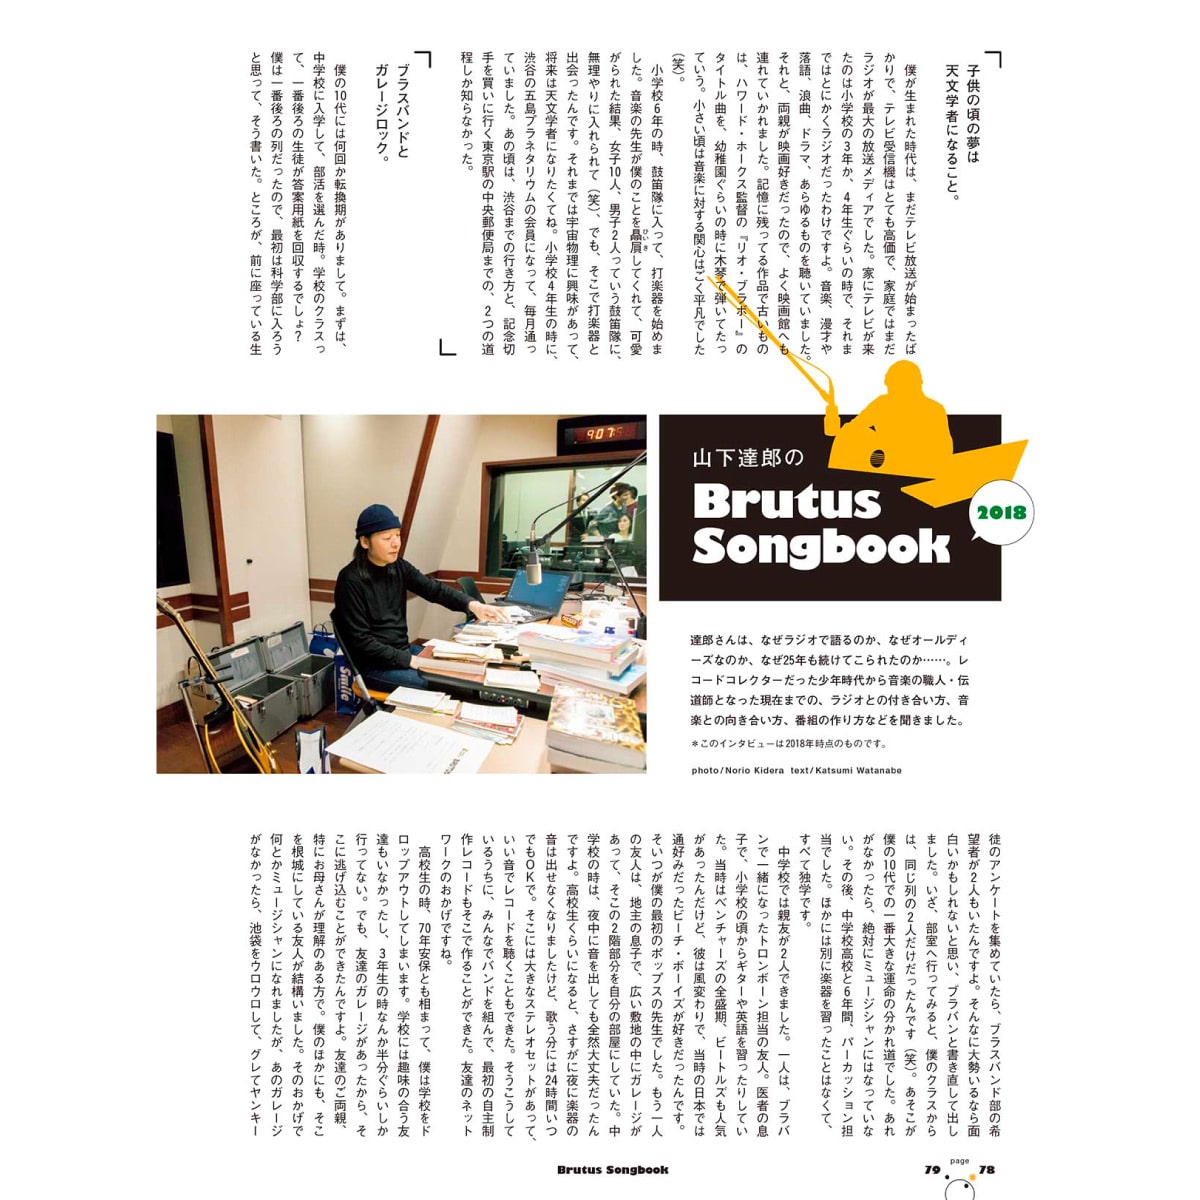 スペシャルインタビュー 山下達郎のBrutus Songbook 2018